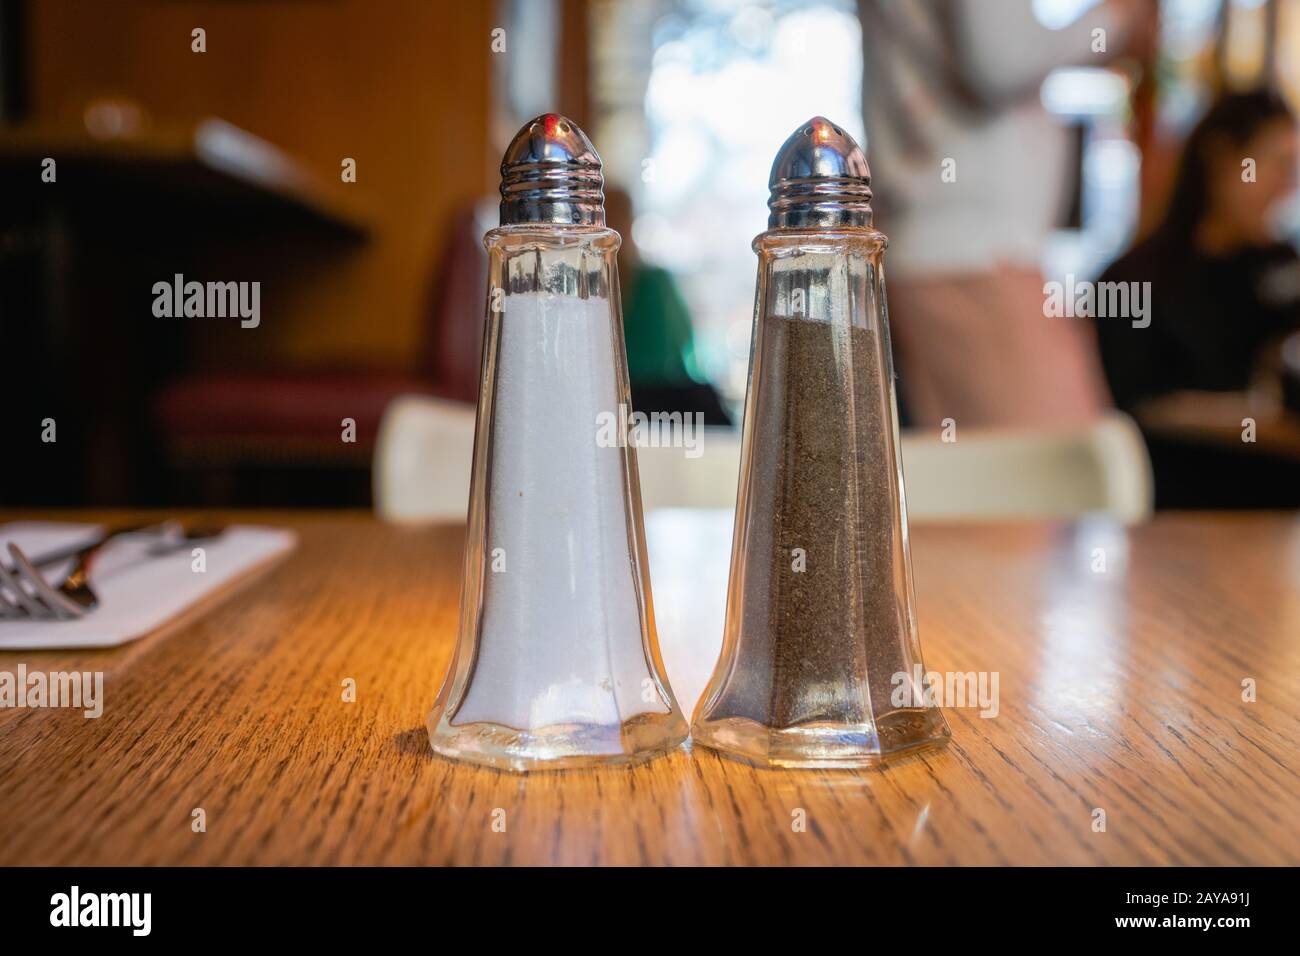 Salz und Pfeffer - Pfefferstreuer und Salzschüttler, die beliebtesten Gewürze, schwarzer Pfeffer und Salz auf dem Tisch im Restaurant Stockfoto